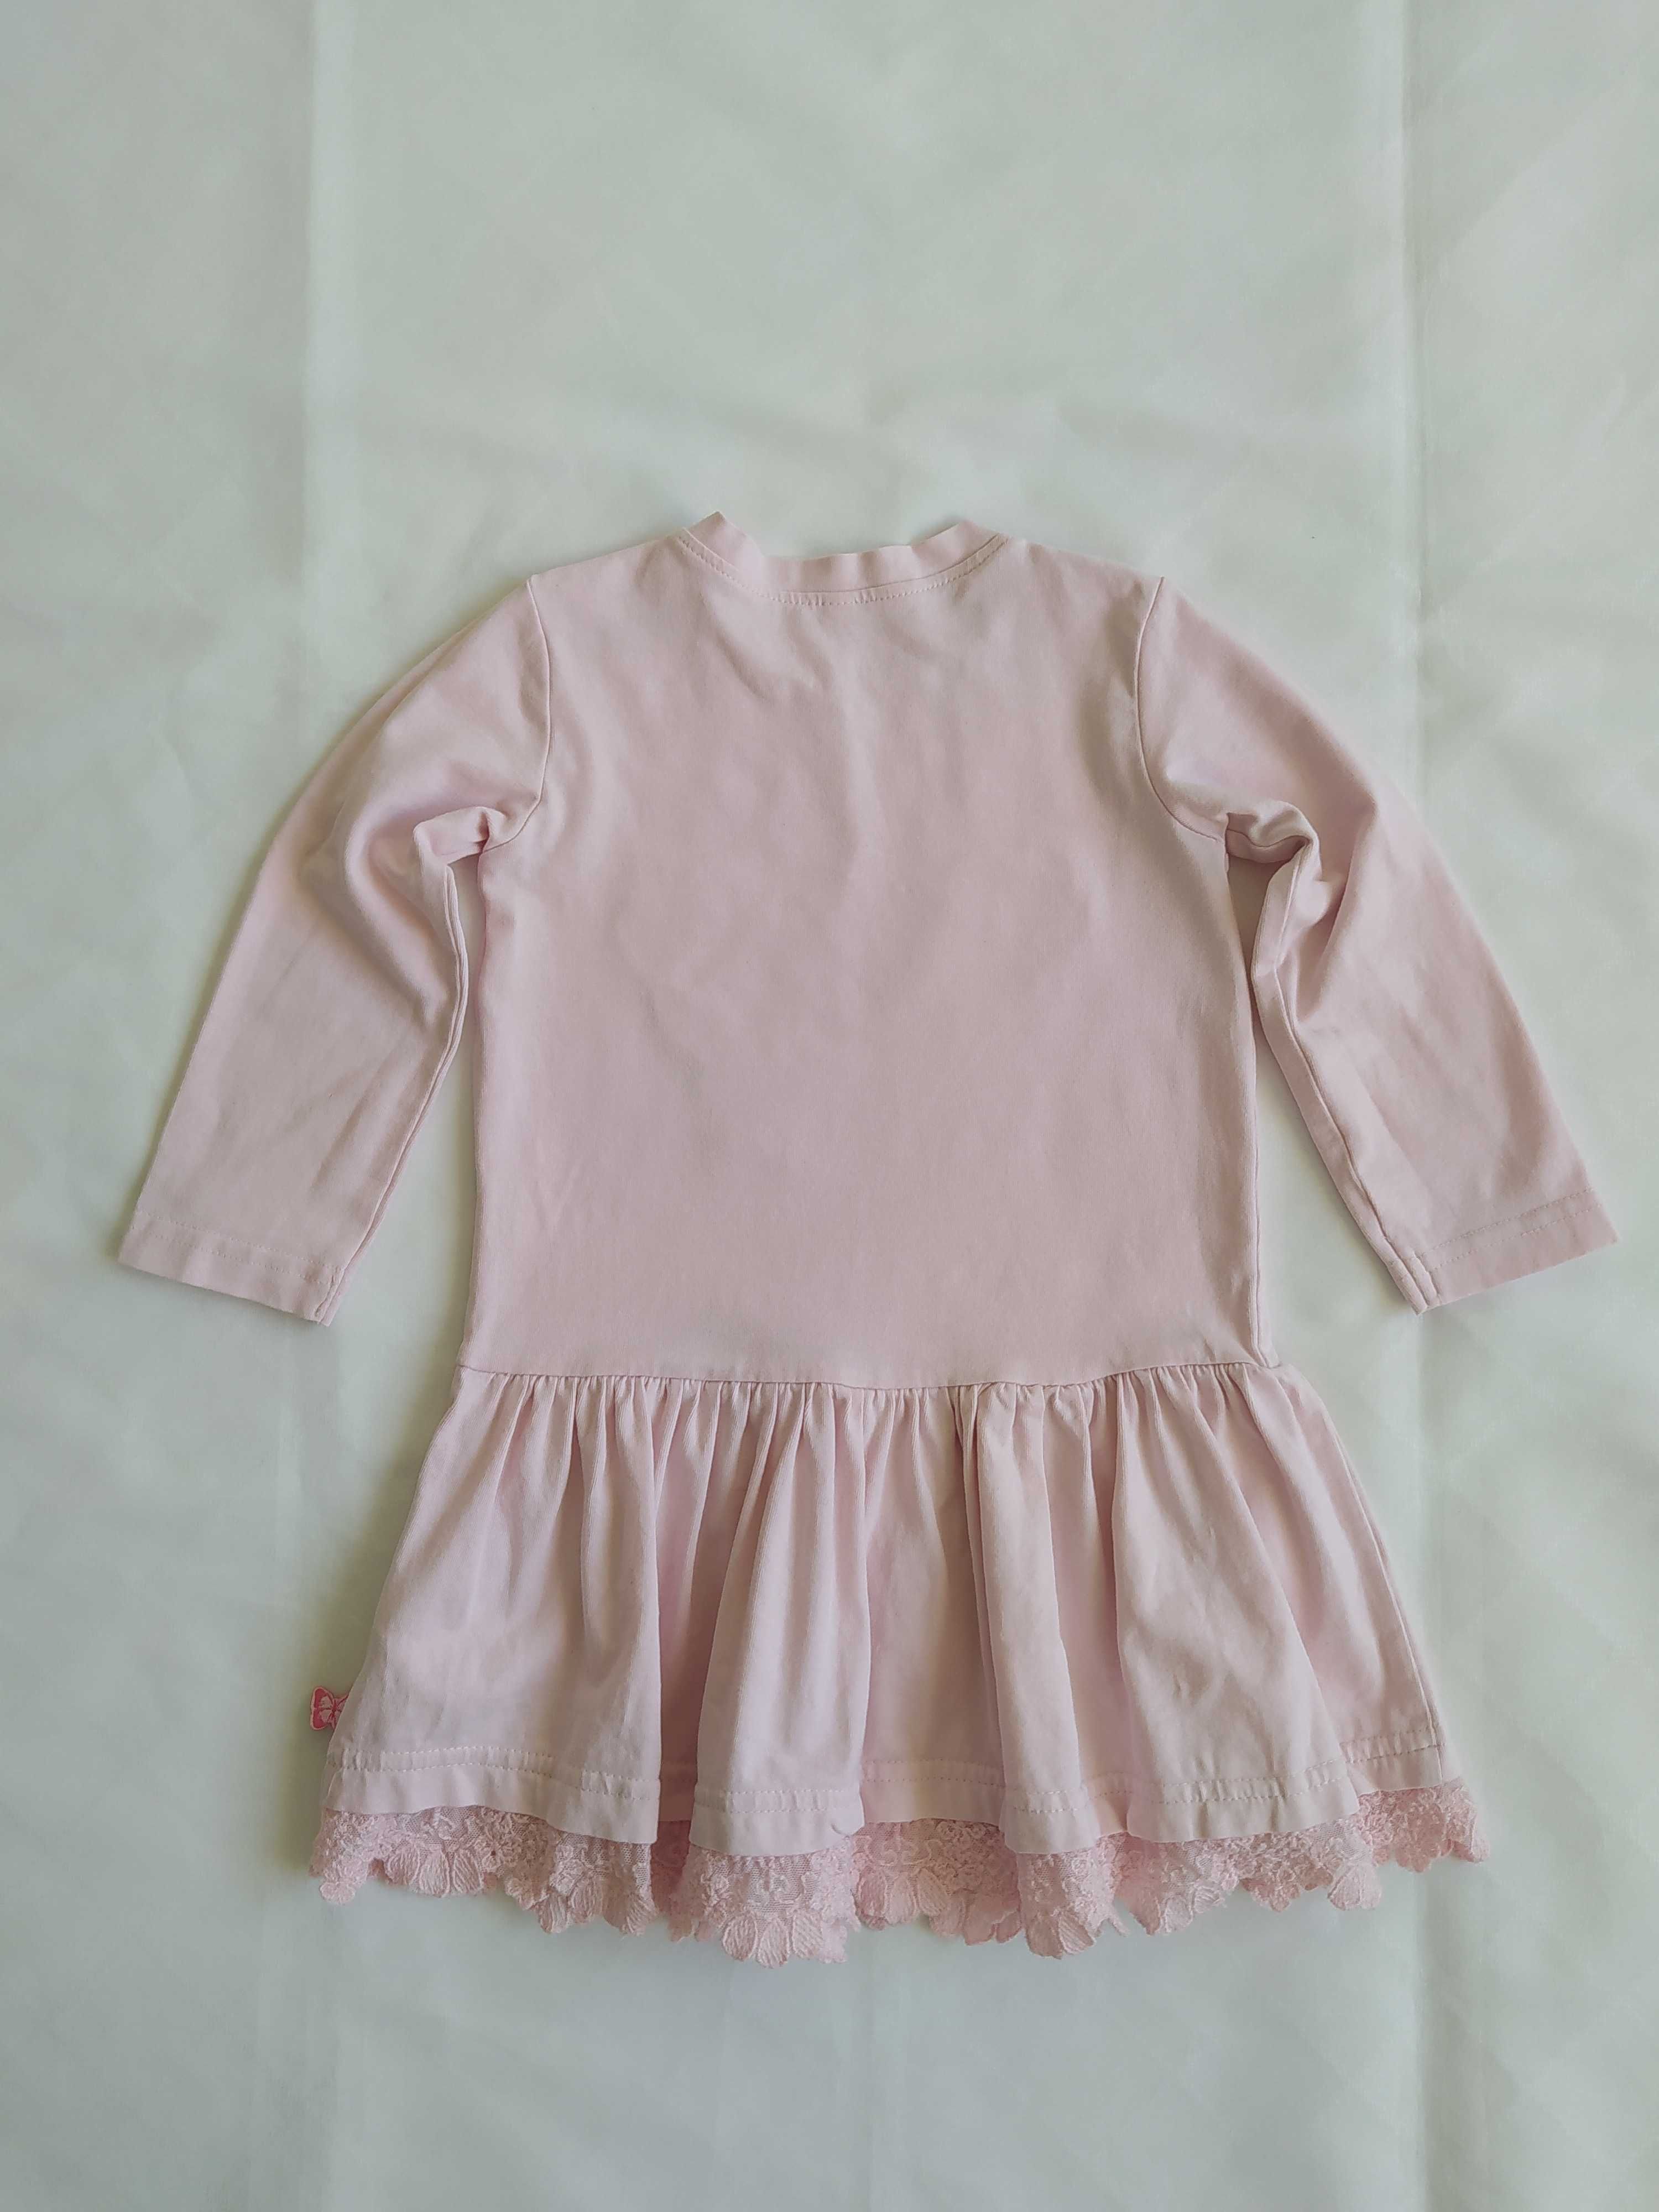 Sukienka różowa długi rękaw Coccodrillo 9-12 m-cy / 80 cm